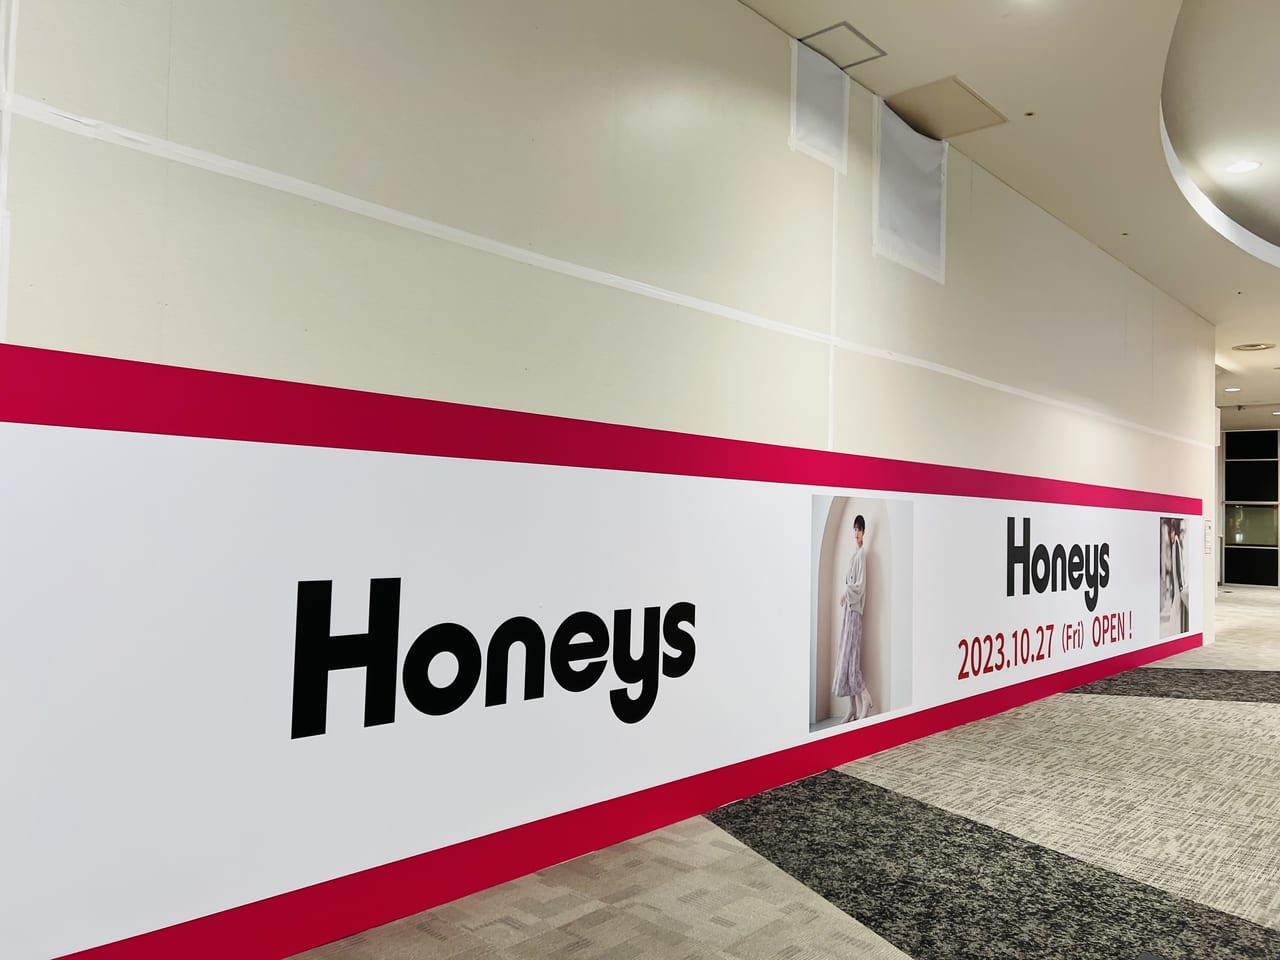 2023年10月27日オープン予定の「Honeys イオンモール高知店」の看板